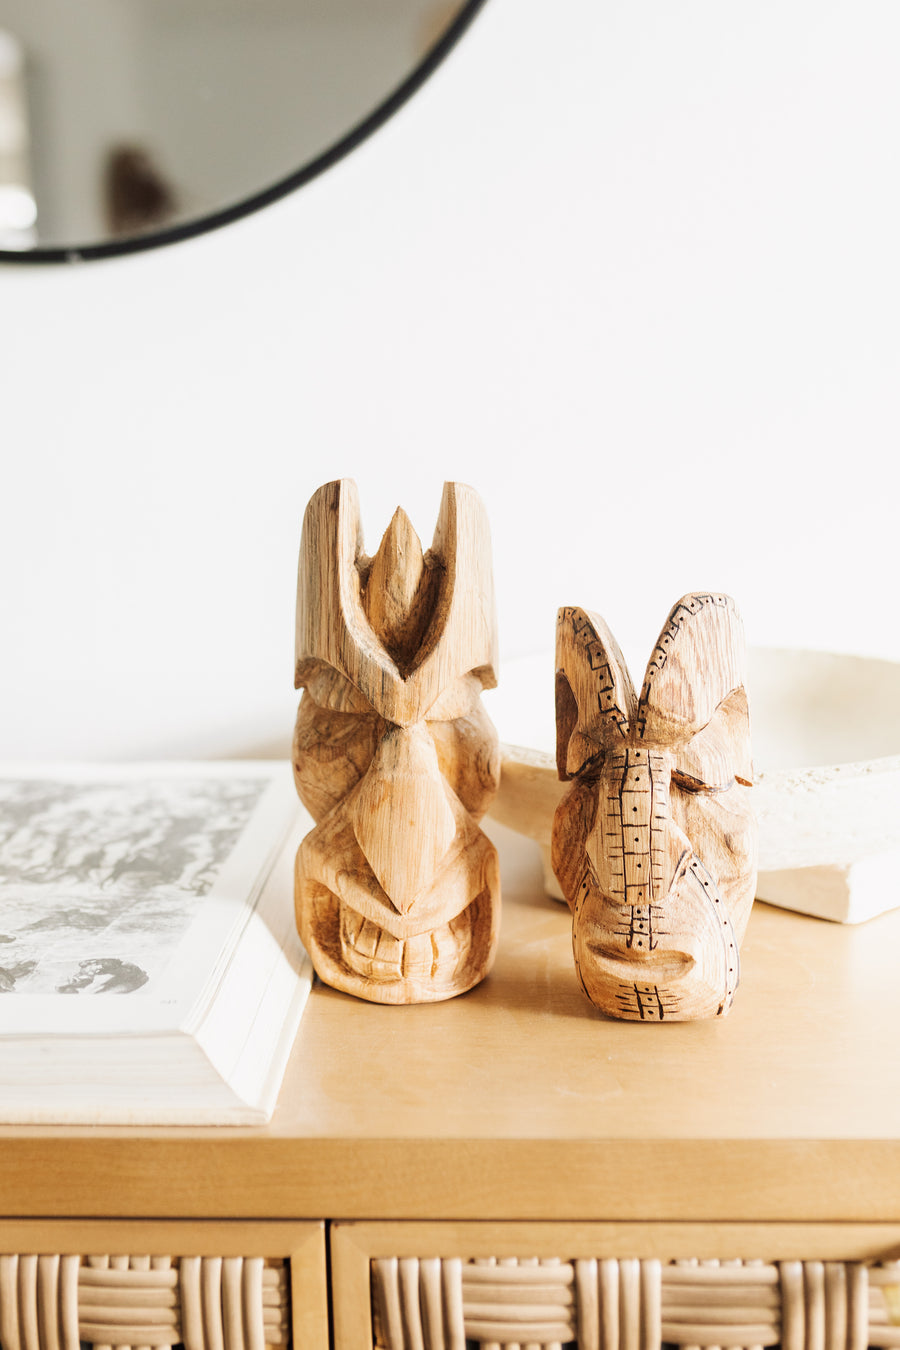 Wood Carved Masks